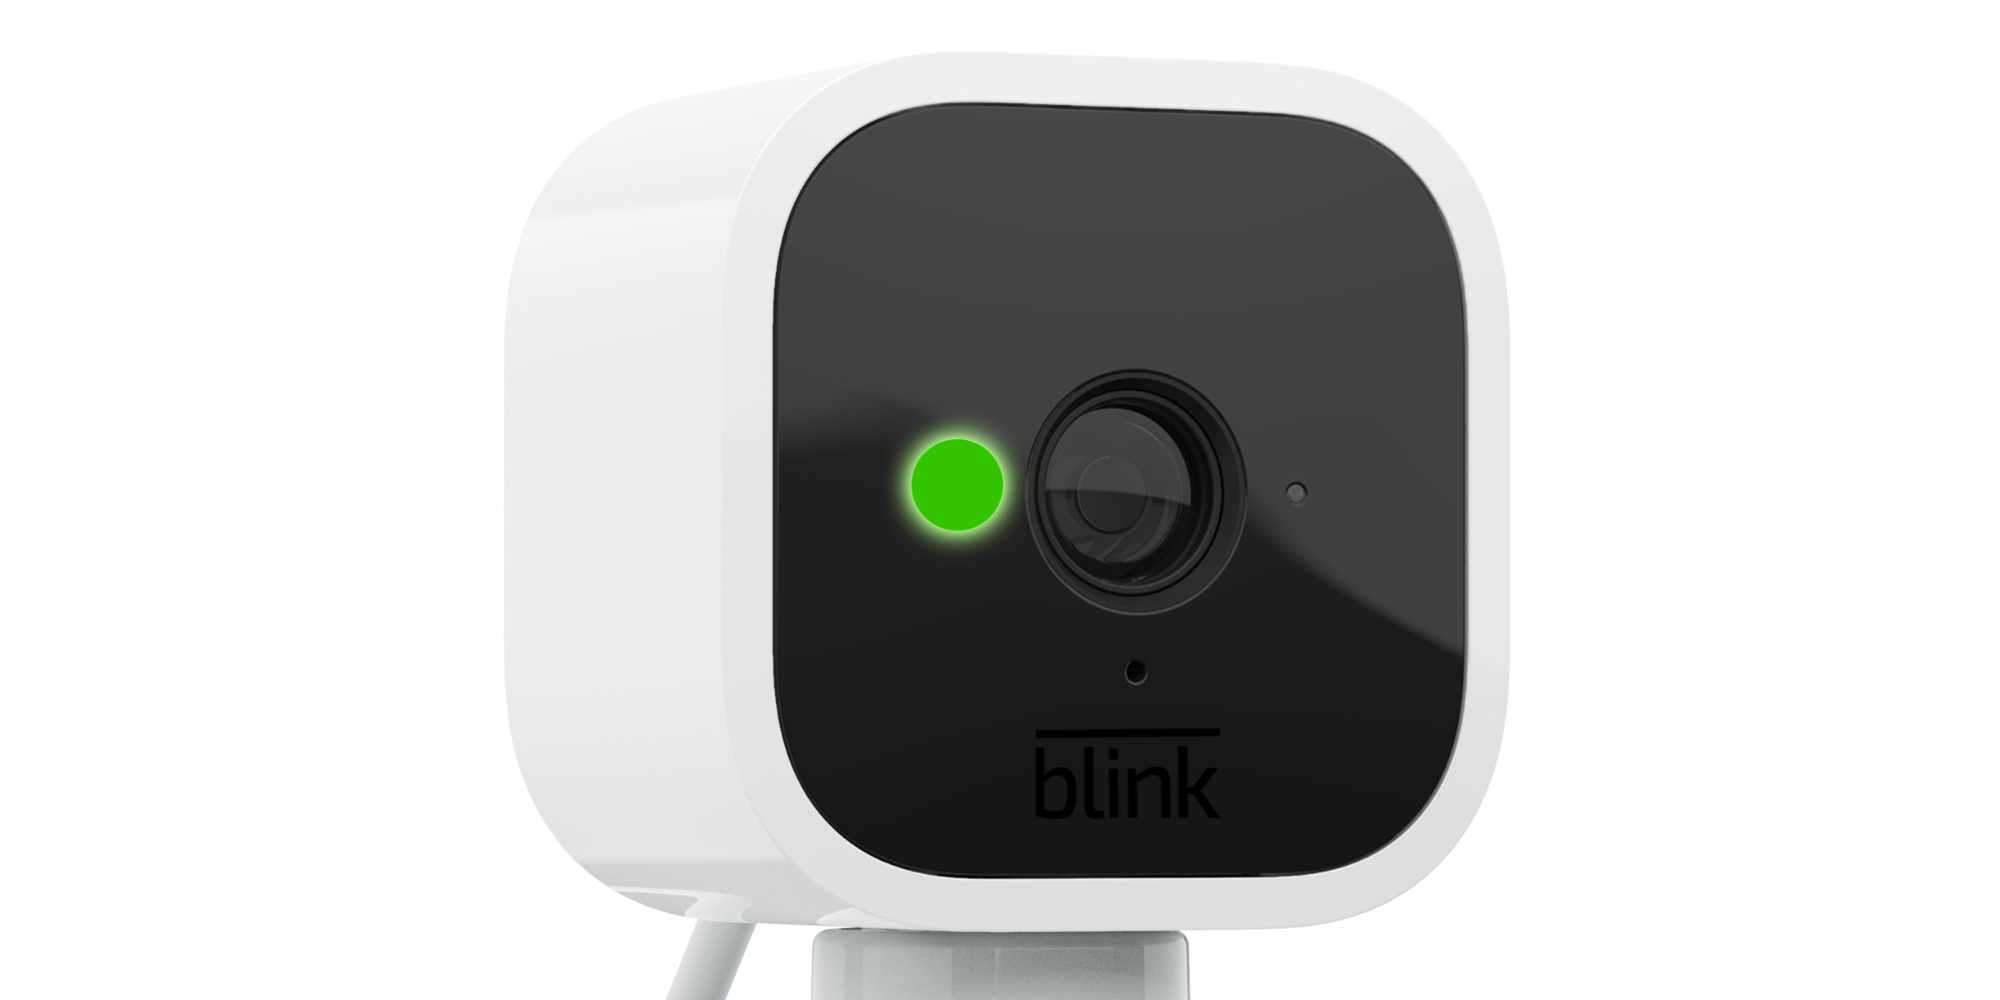 Lumière verte clignotante sur une caméra Blink Mini